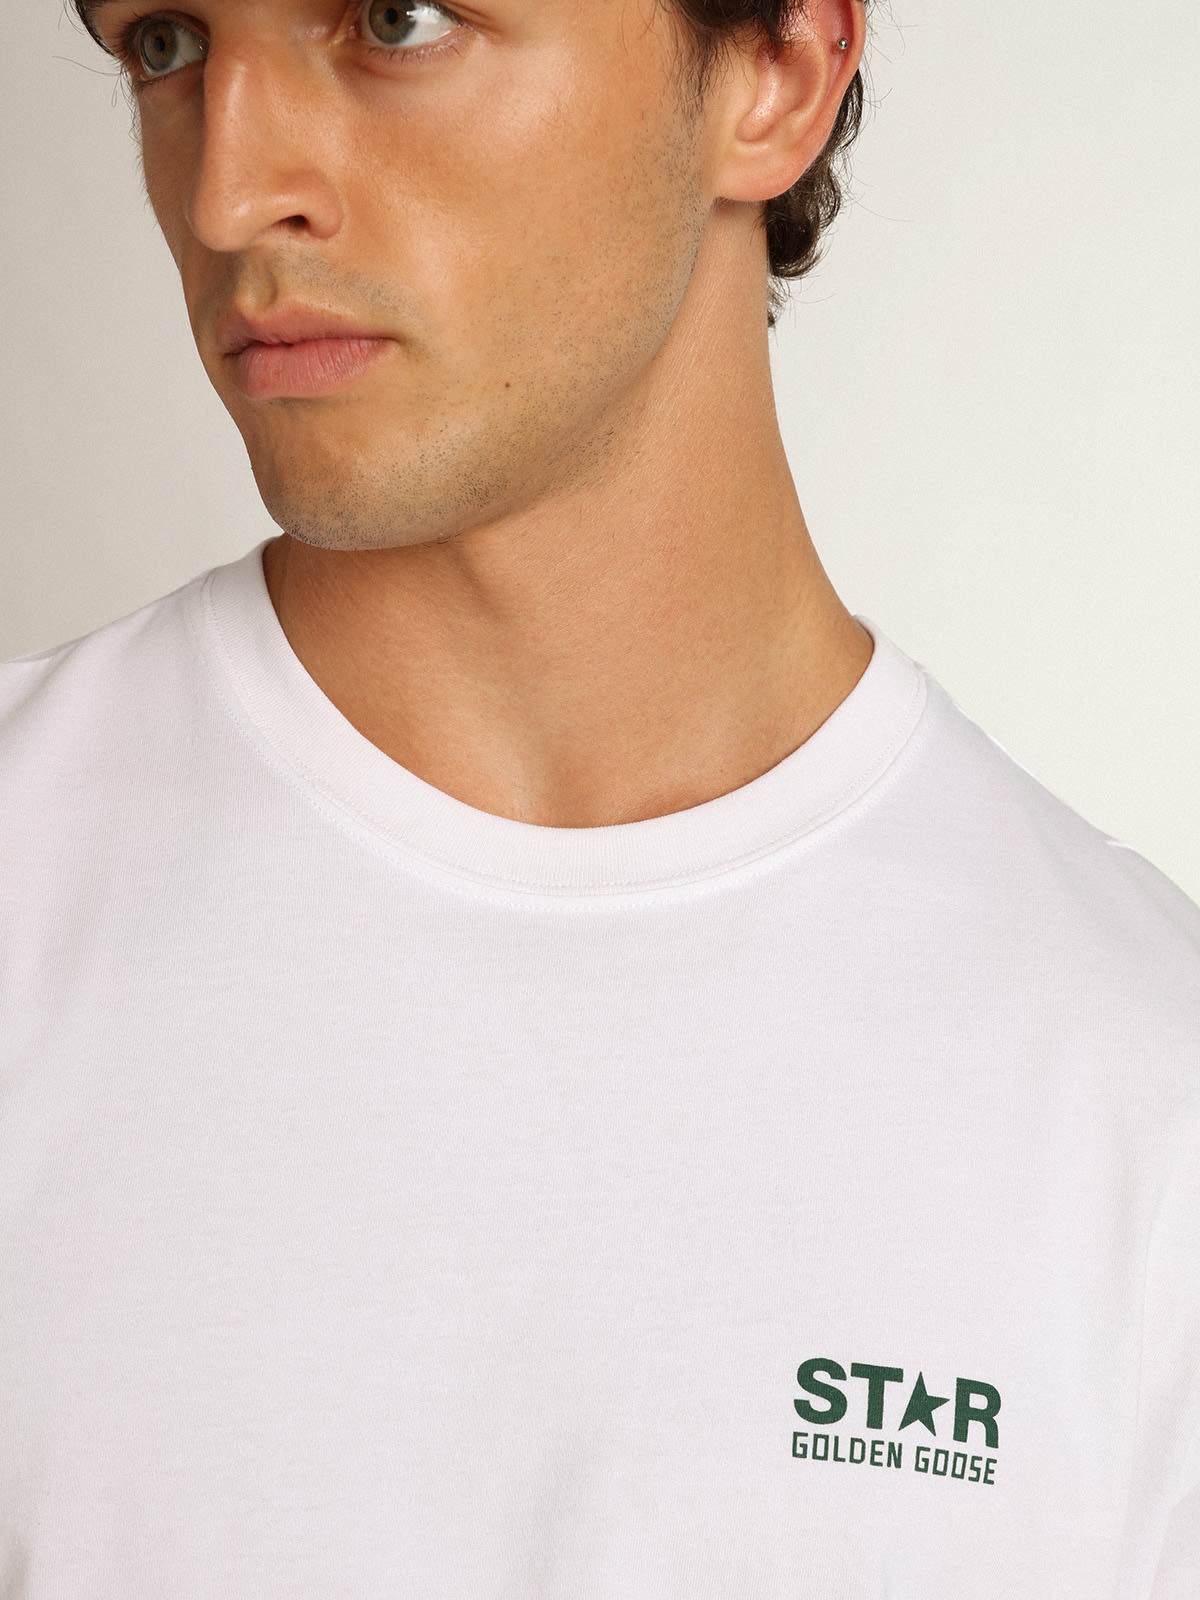 Golden Goose - Camiseta masculina branca com logo e estrela verdes em contraste in 